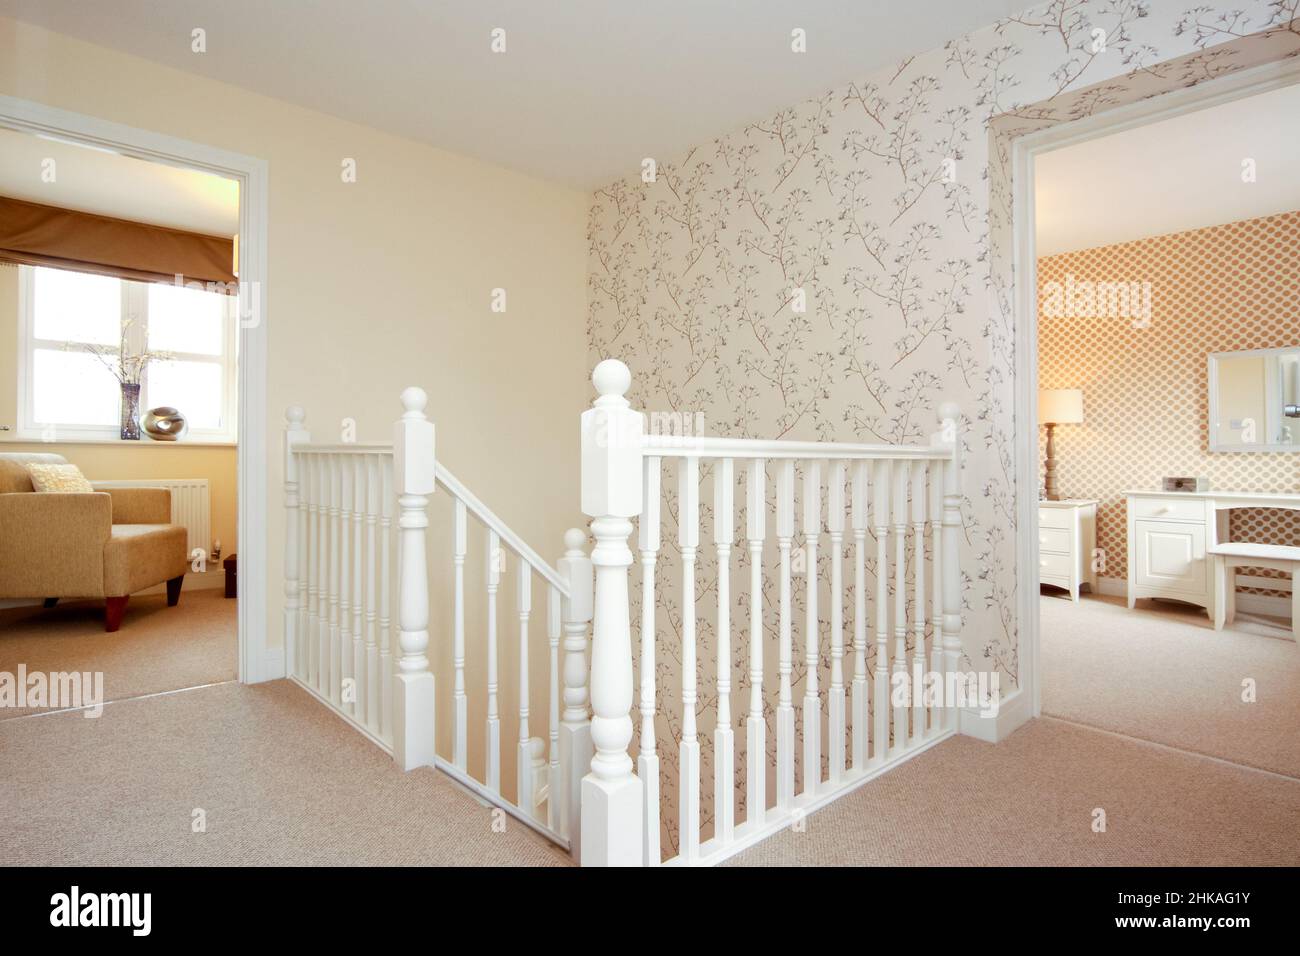 Atterrissage dans une maison moderne, vue sur les escaliers et banister dans deux chambres, mur caractéristique. Banque D'Images